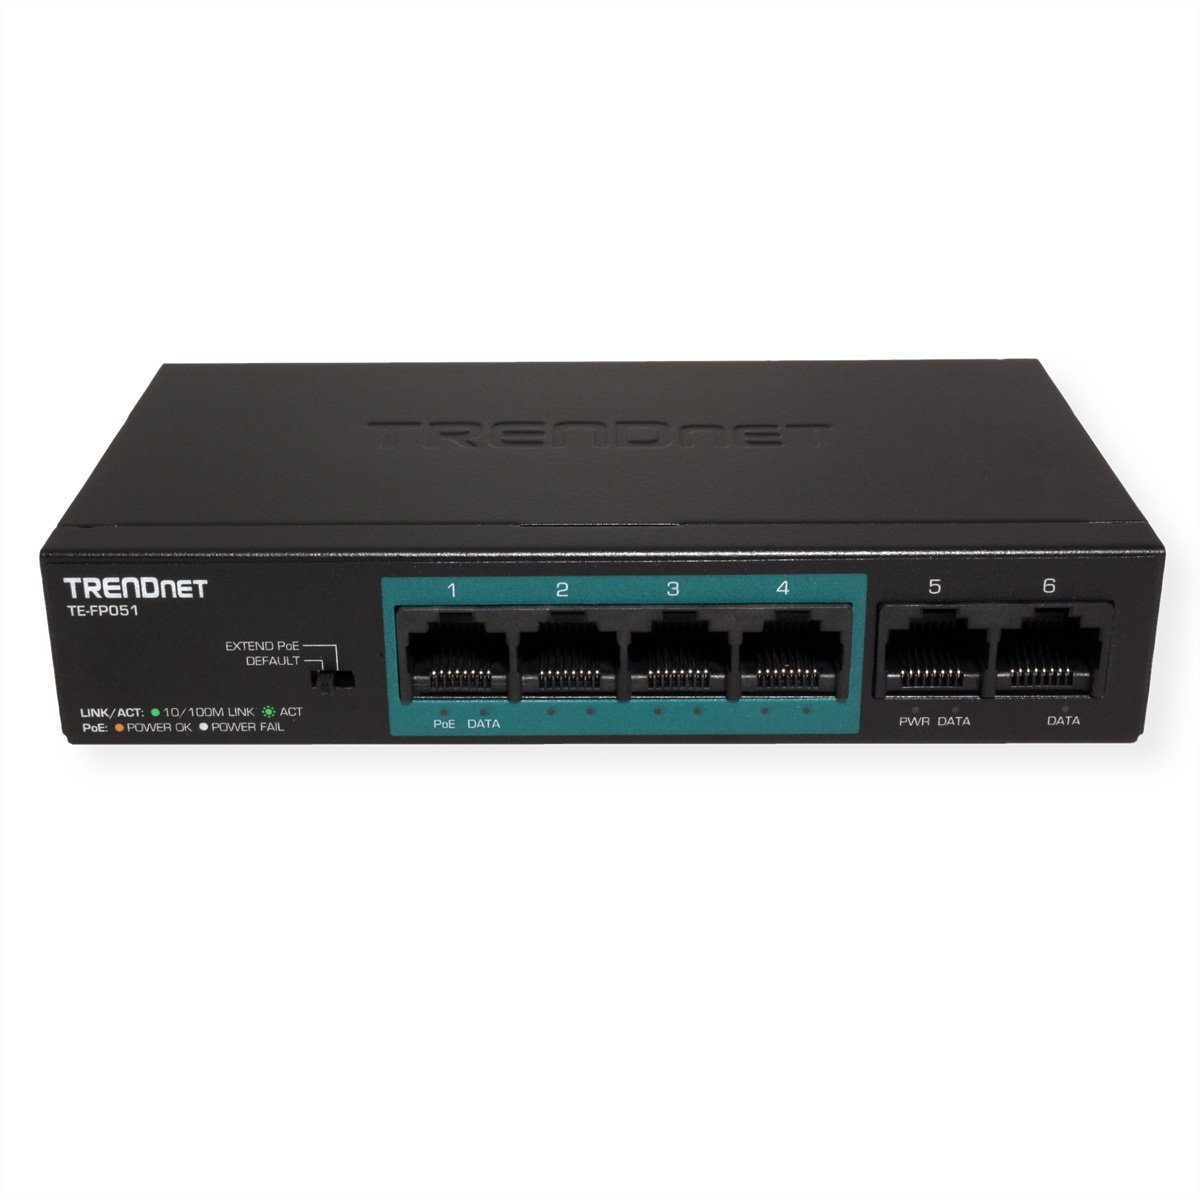 5-Port TE-FP051 PoE+ Ethernet Range Trendnet Long Fast Switch Netzwerk-Switch